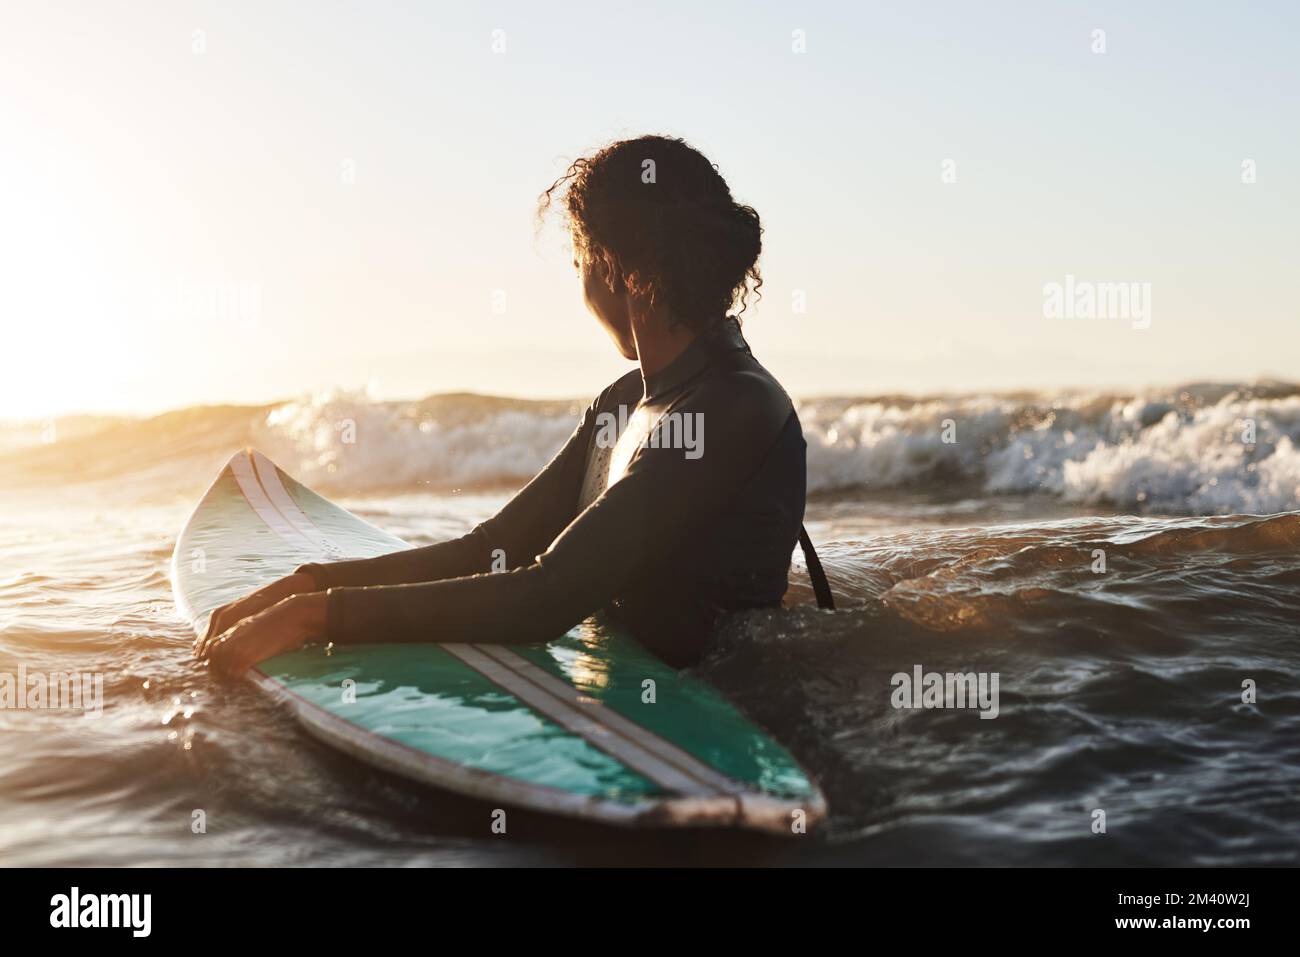 Genießen Sie das Leben, eine Welle nach der anderen. Eine wunderschöne junge Frau, die im Meer surft. Stockfoto